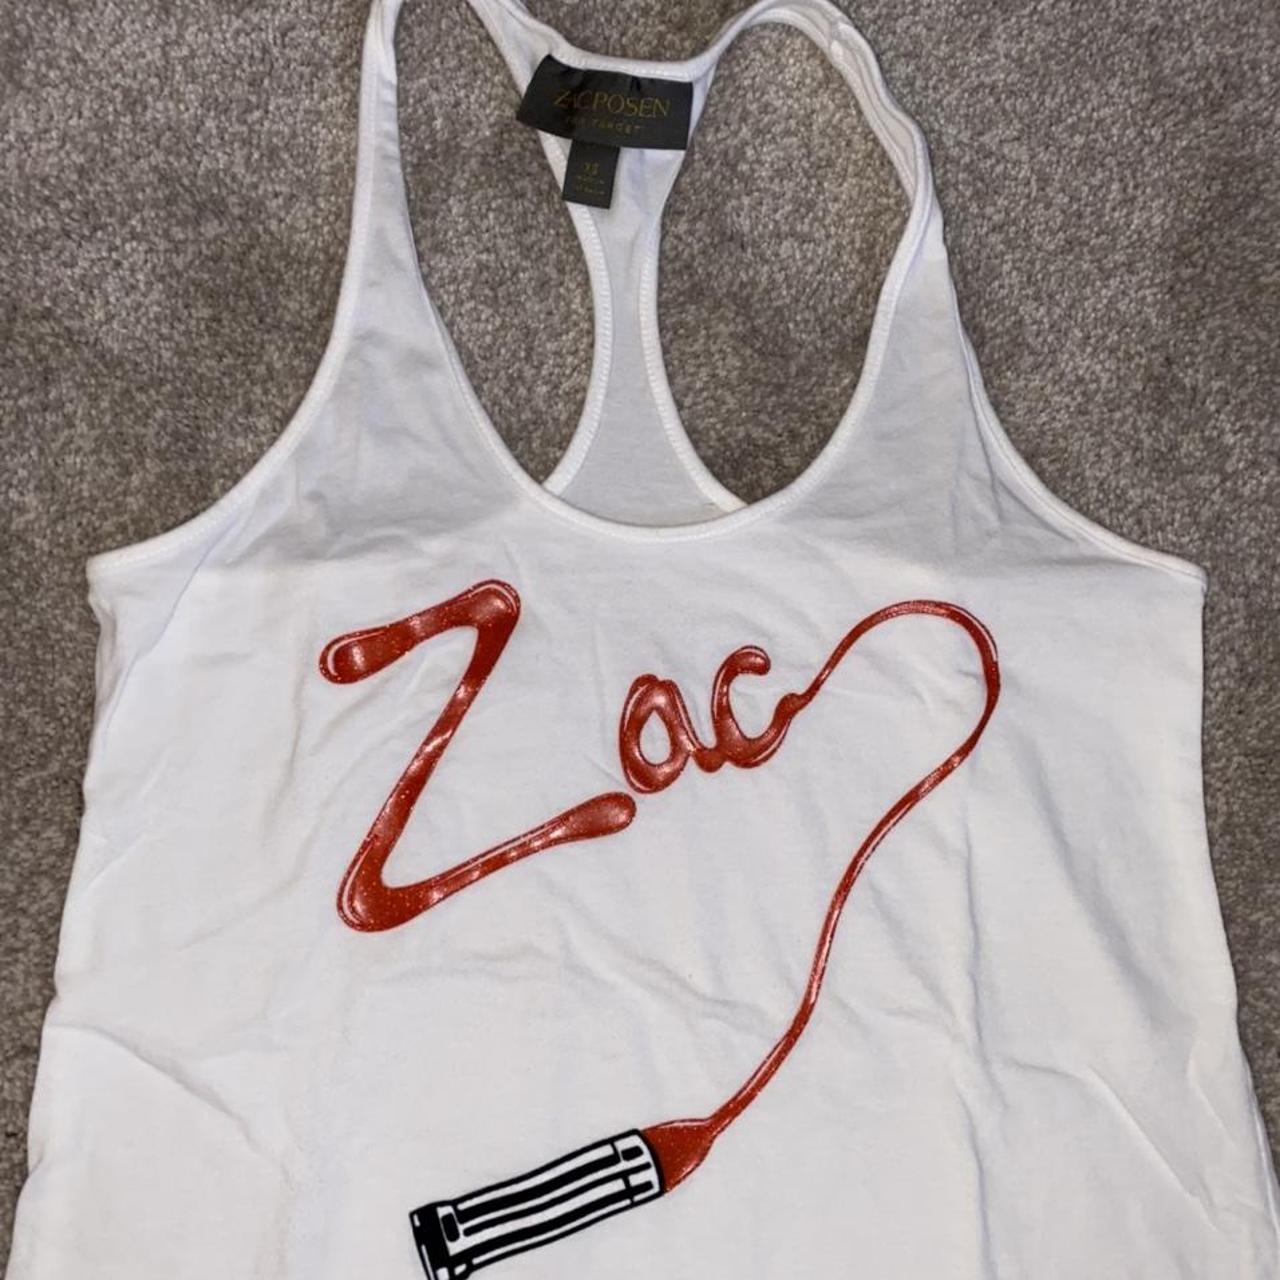 Zac Posen Women's White and Red Vest (2)